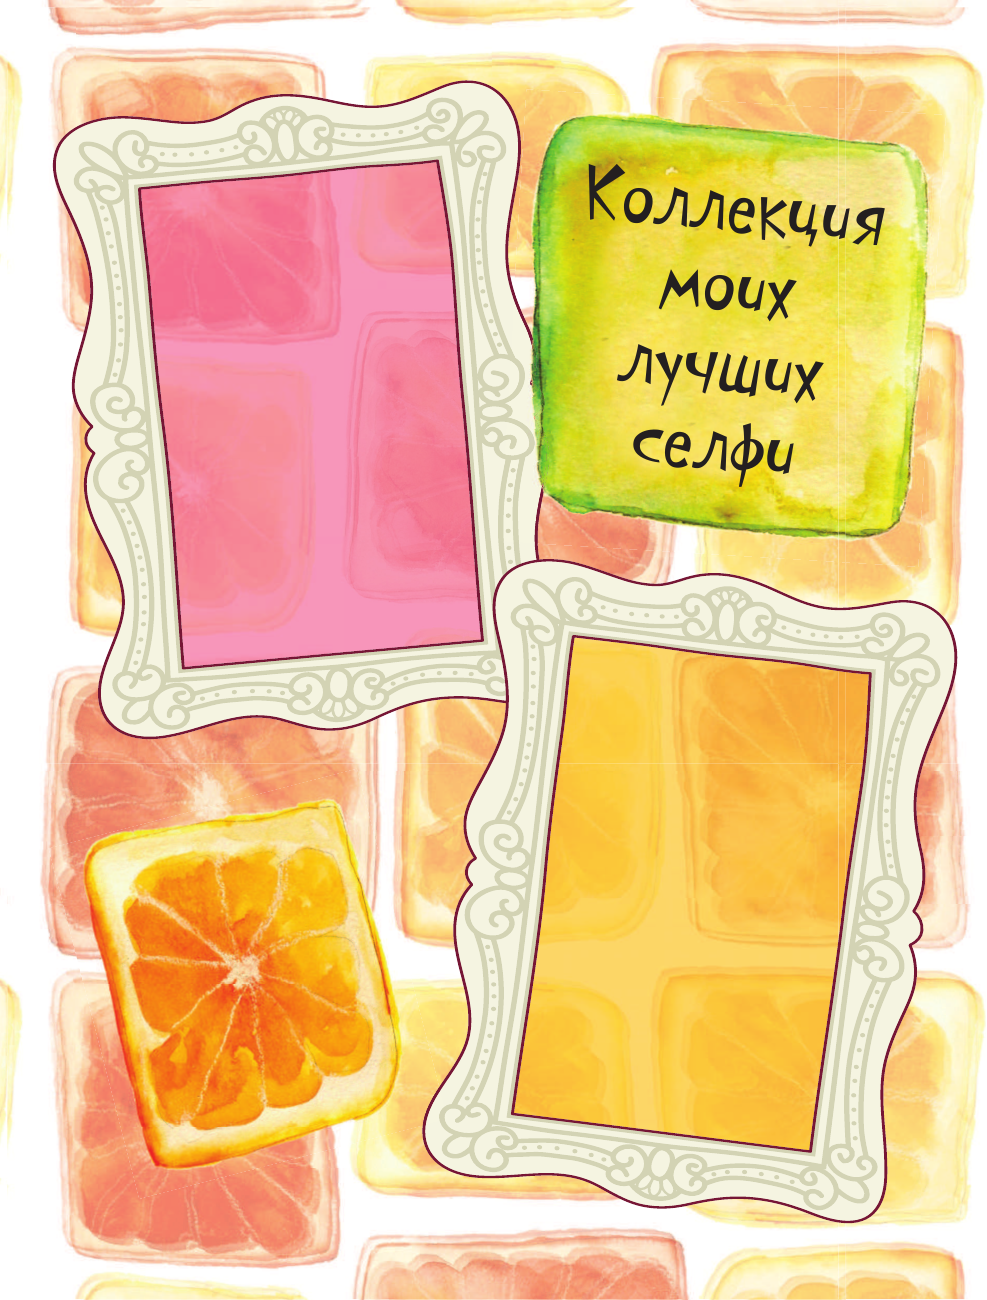 Мой личный дневник "Ежевичный" (с конвертами) - фото №8